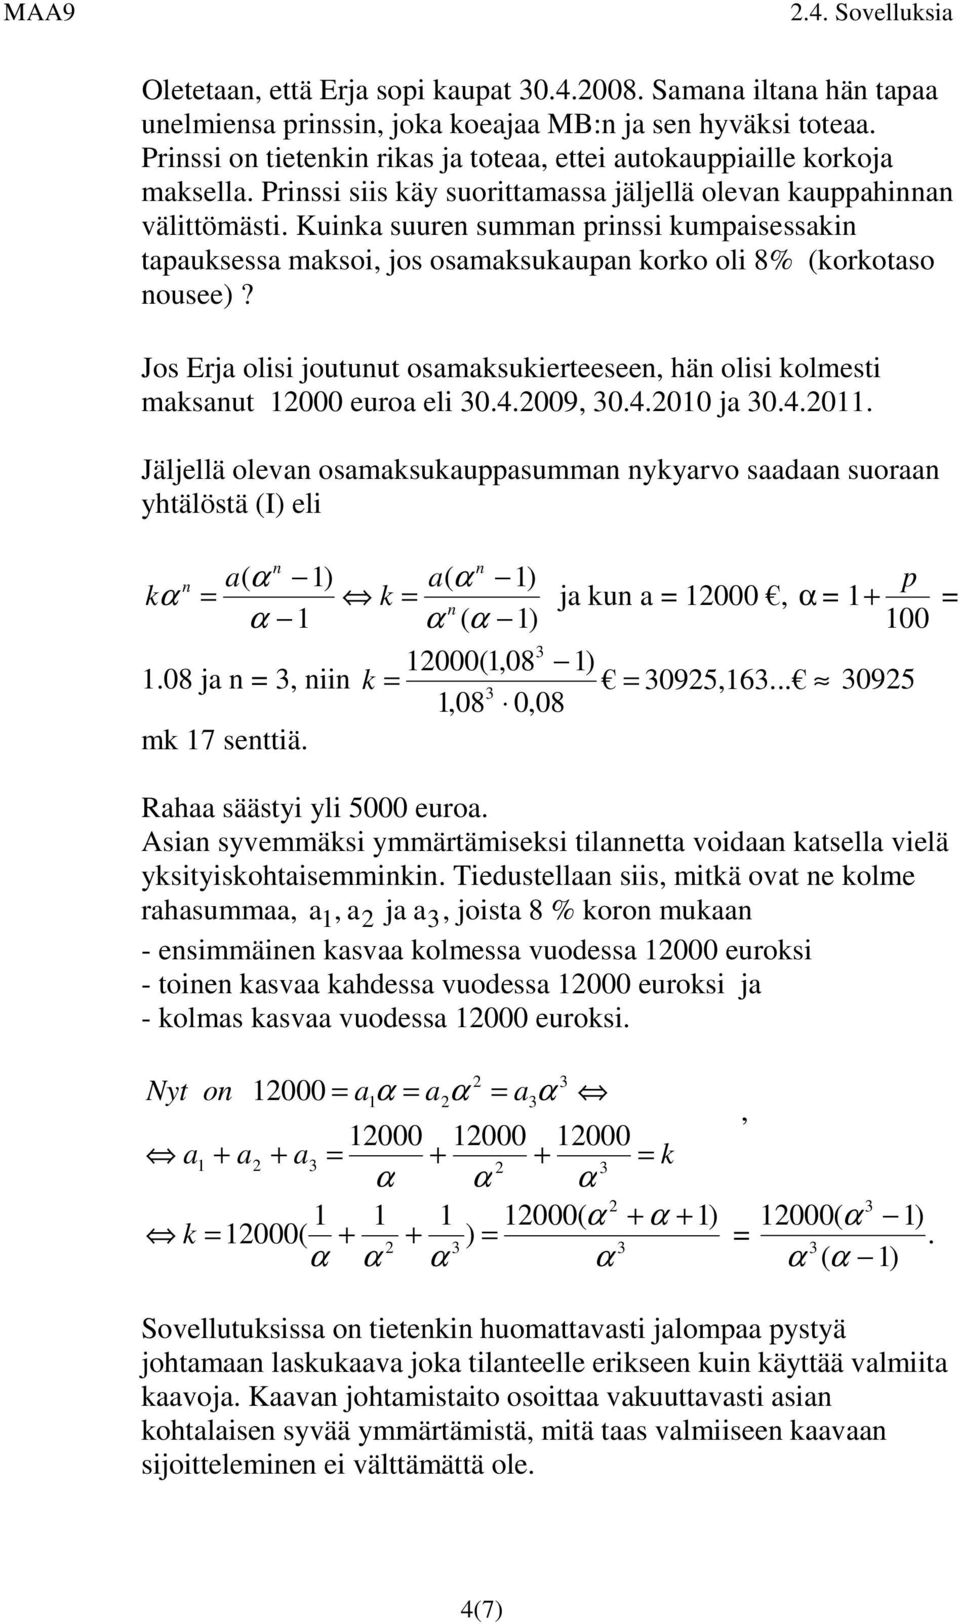 Jos Erja olisi joutuut osamaksukierteesee, hä olisi kolmesti maksaut 000 euroa eli 0.4.009, 0.4.0 ja 0.4.0. Jäljellä oleva osamaksukauasumma ykyarvo saadaa suoraa yhtälöstä (I) eli k α k ja ku a 000, α + α ( 0 000(,08 ).